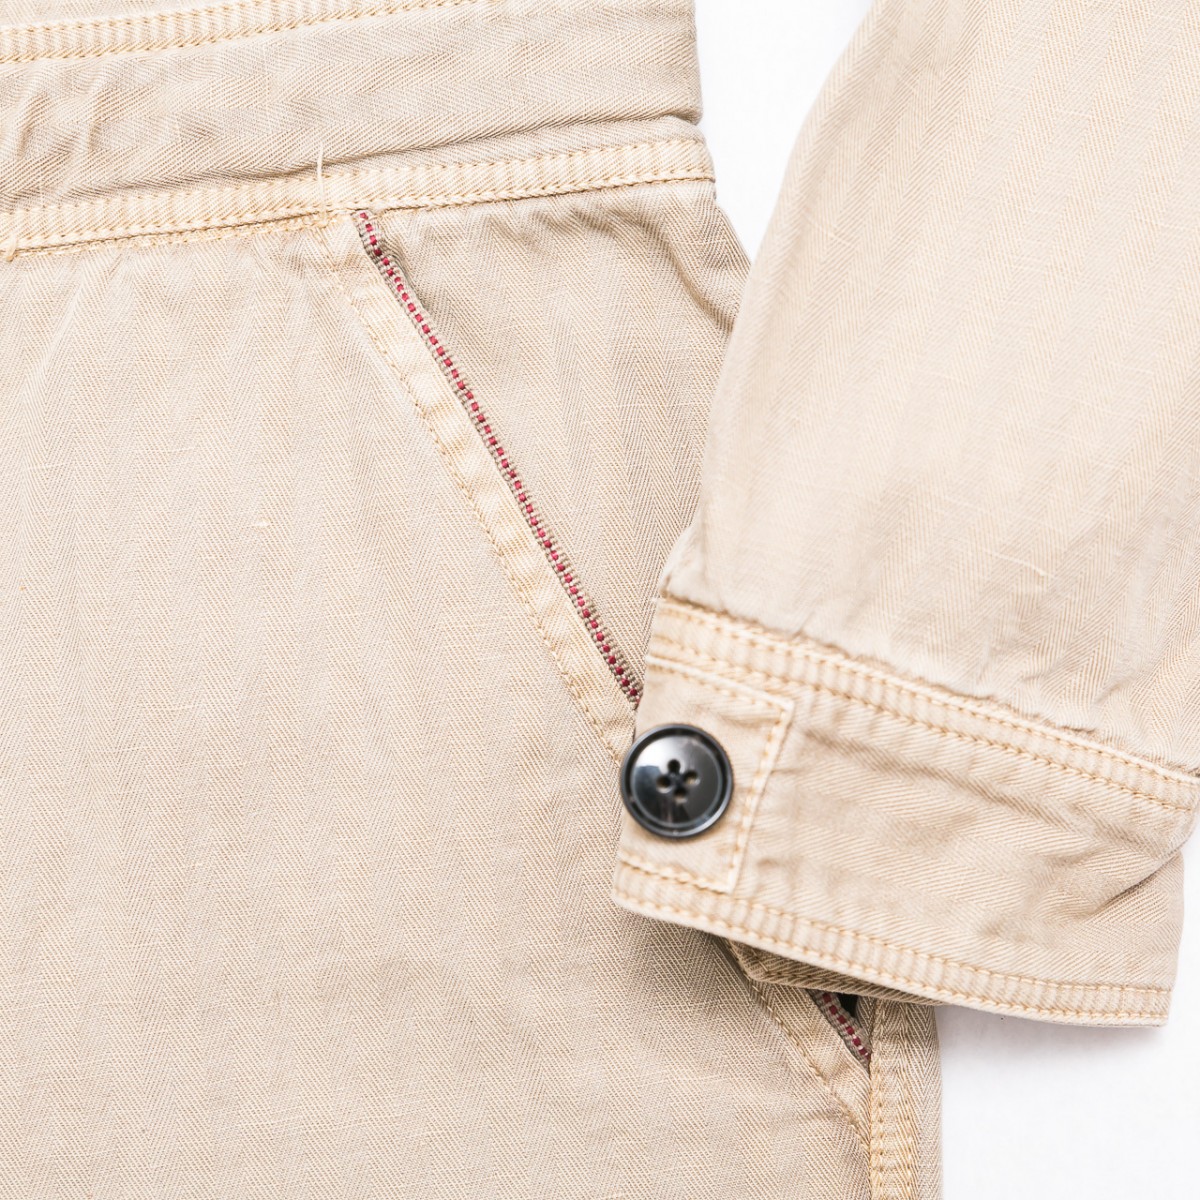 combinaison-pantalon-beige-a-zip-pour-femme-detail-manche